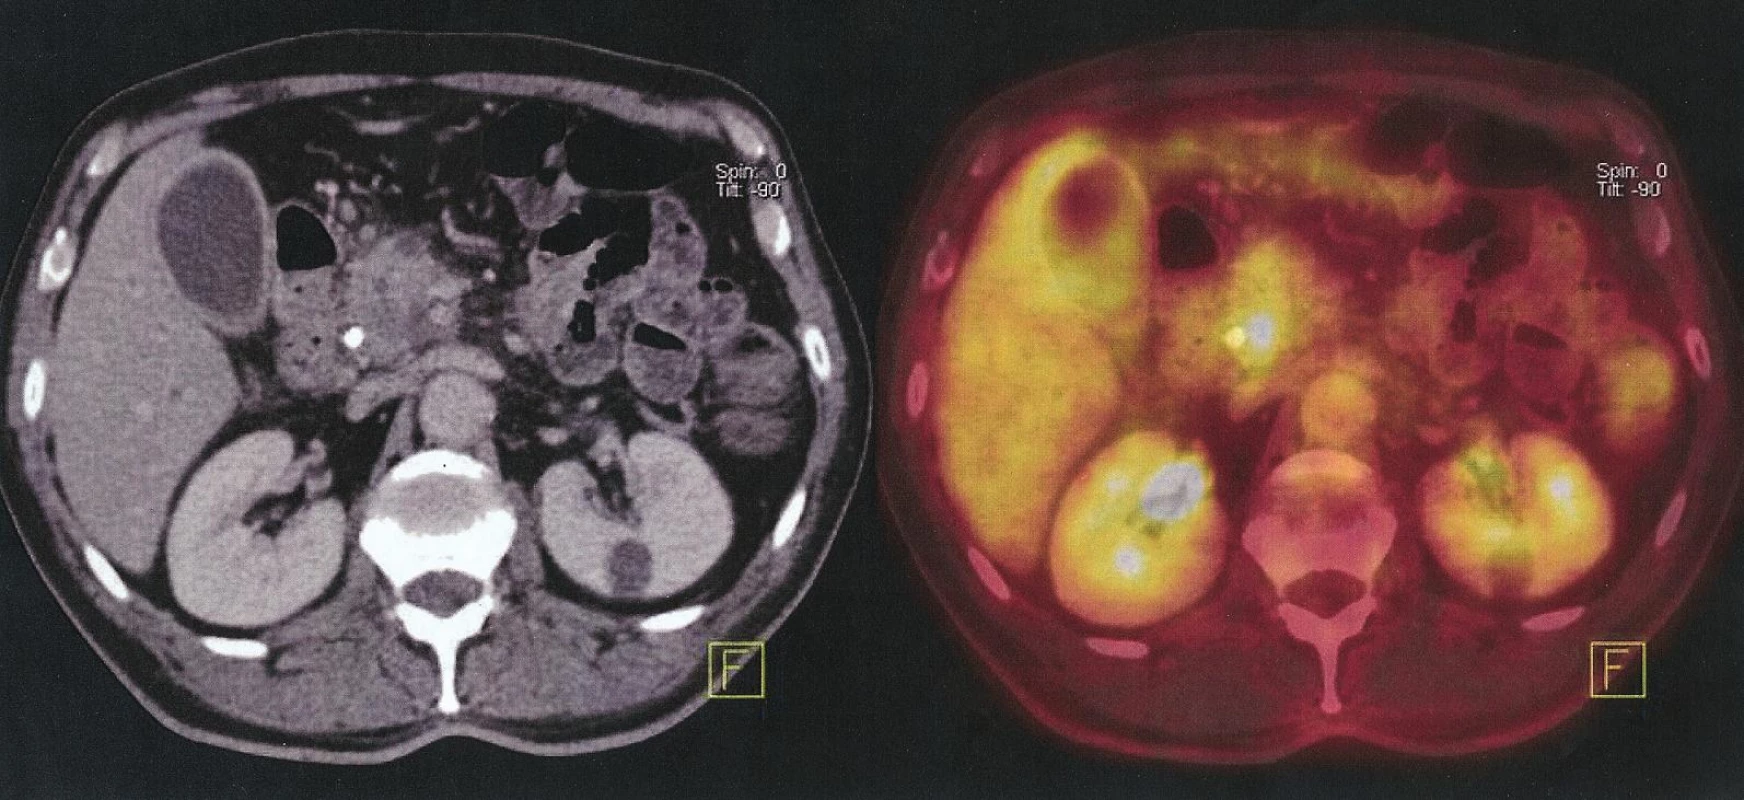 Nemocný s maligním ampulomem. Falešná pozitivita – PET/CT prokazuje metastázu jater, provedena pravostranná duodenopankreatektomie, ložisko v játrech benigní hamartom
Fig. 4. Patient with malignant ampuloma. False positive finding – PET/CT identifies liver metastases, performed right sided duodenopancreatectomy, lesion in liver is benign hamartoma